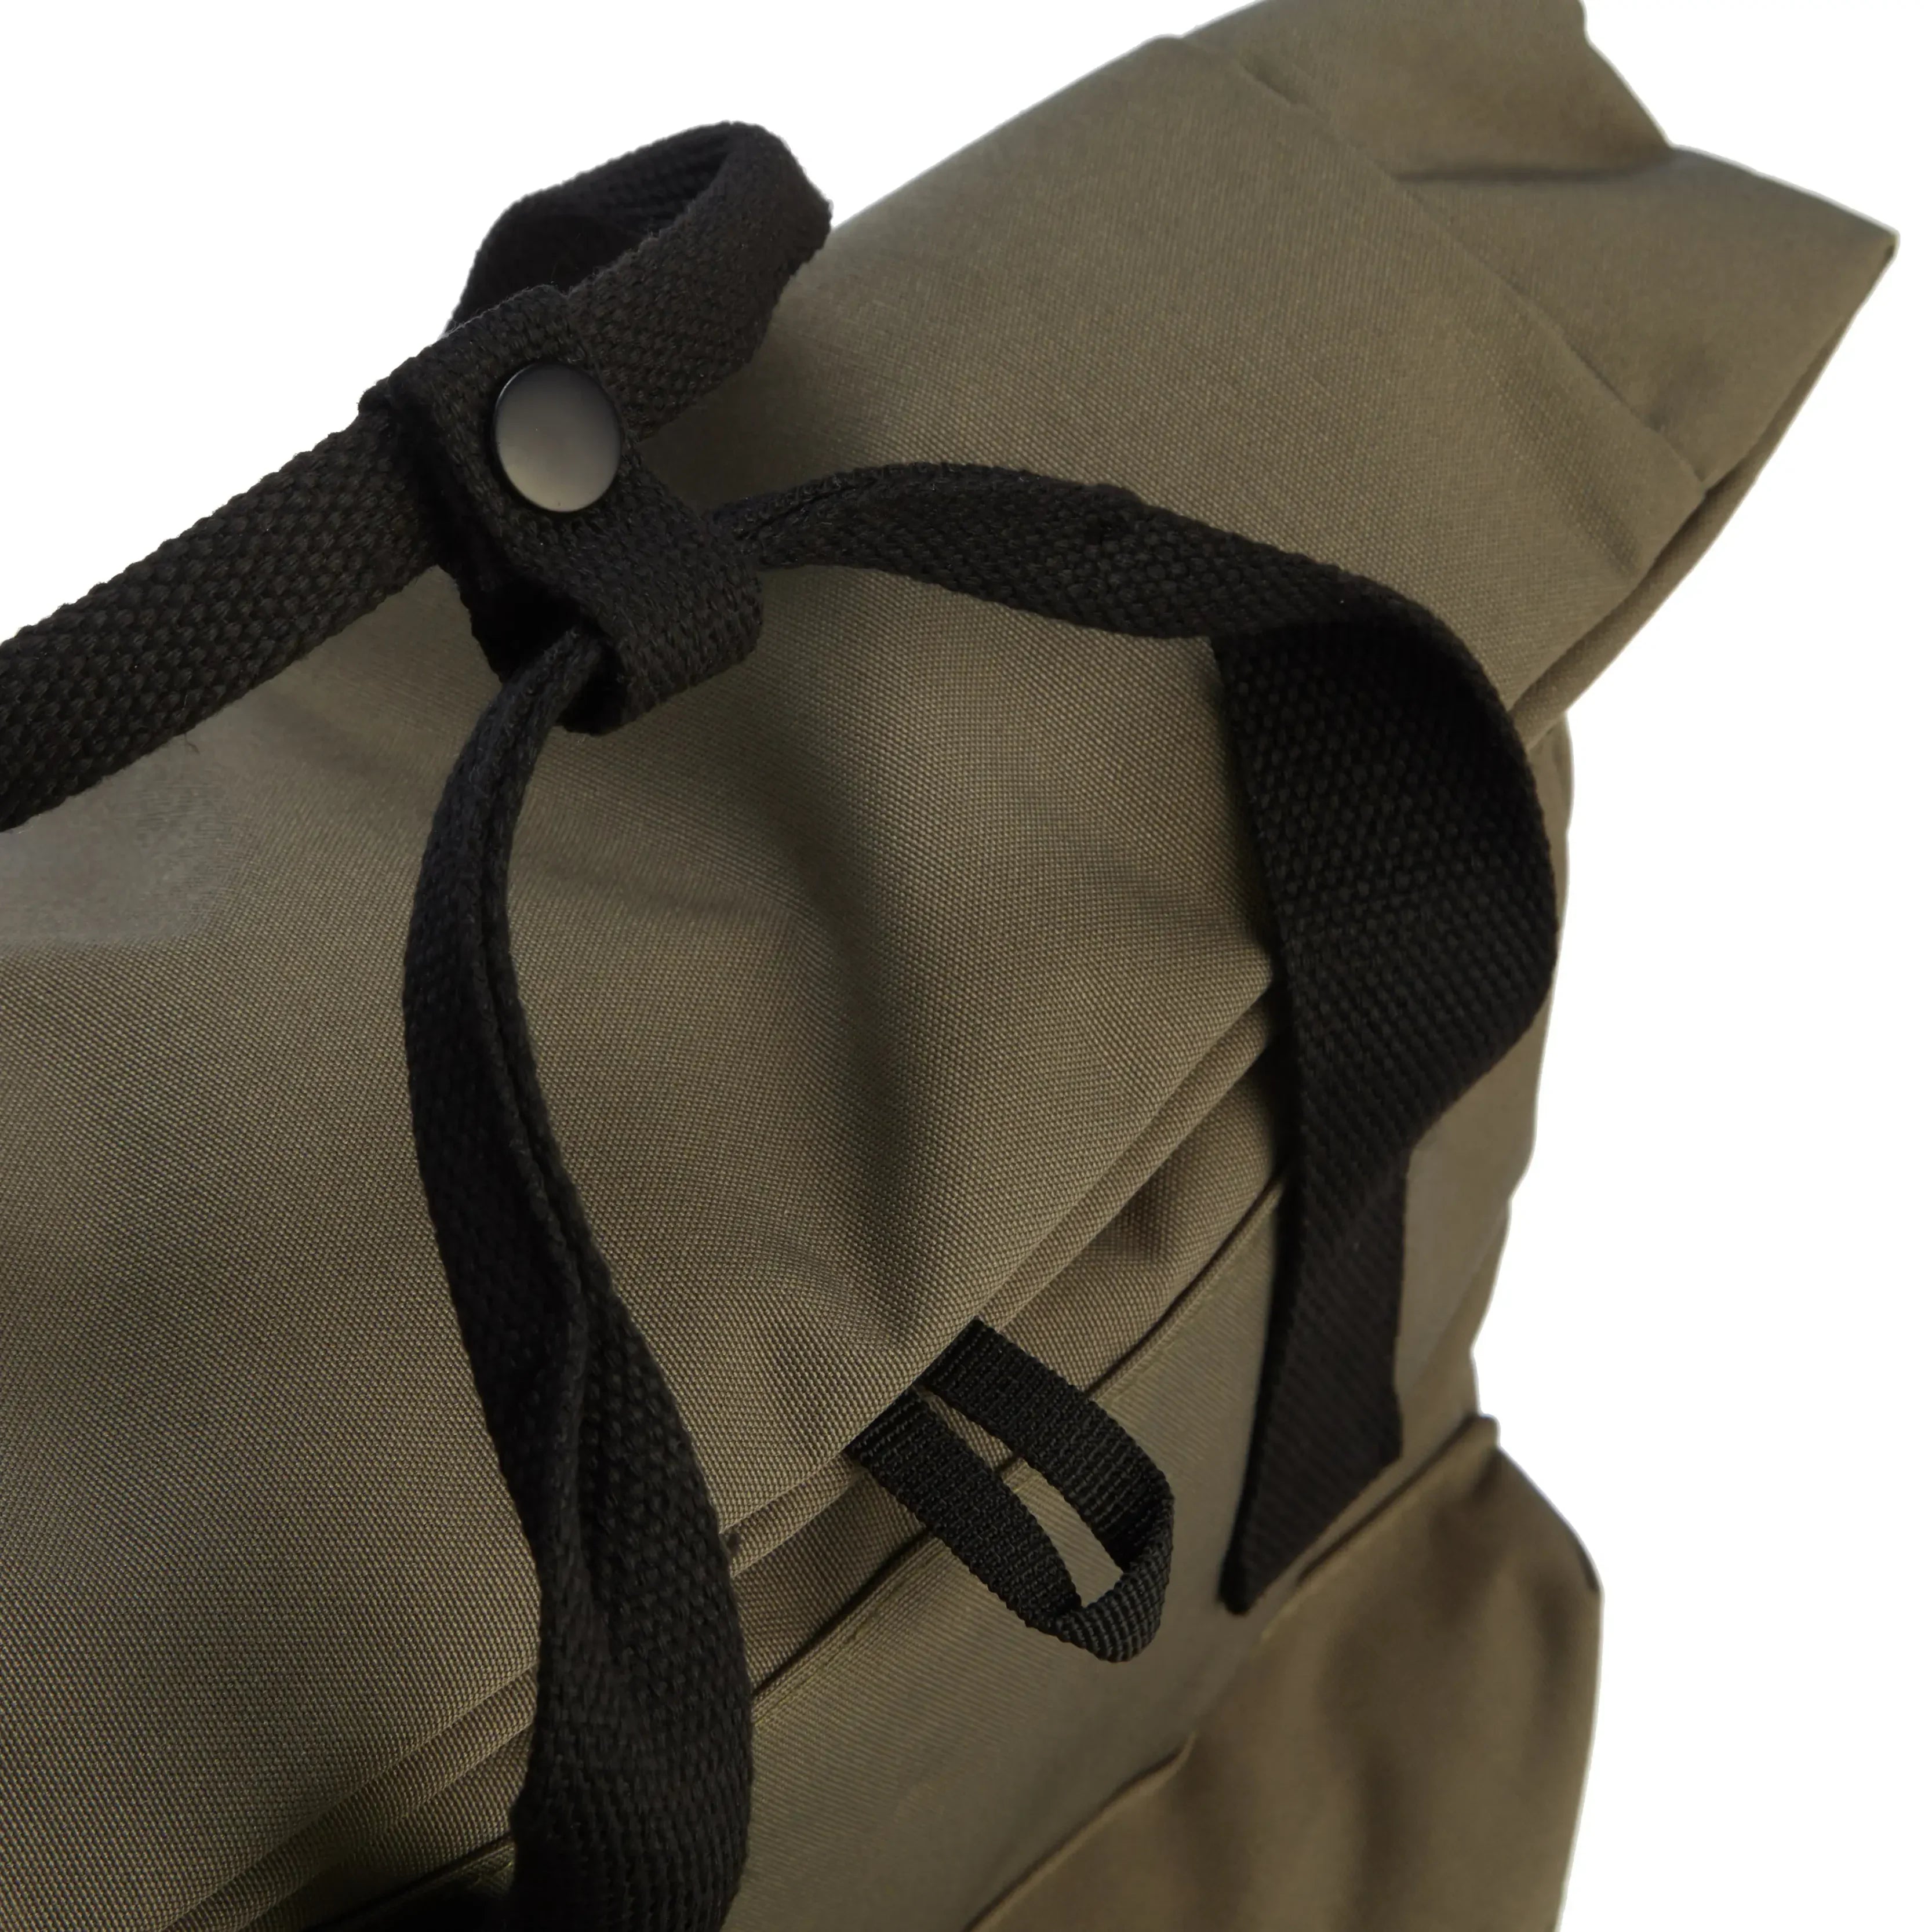 koffer-direkt.de Leisure backpack 42 cm - green